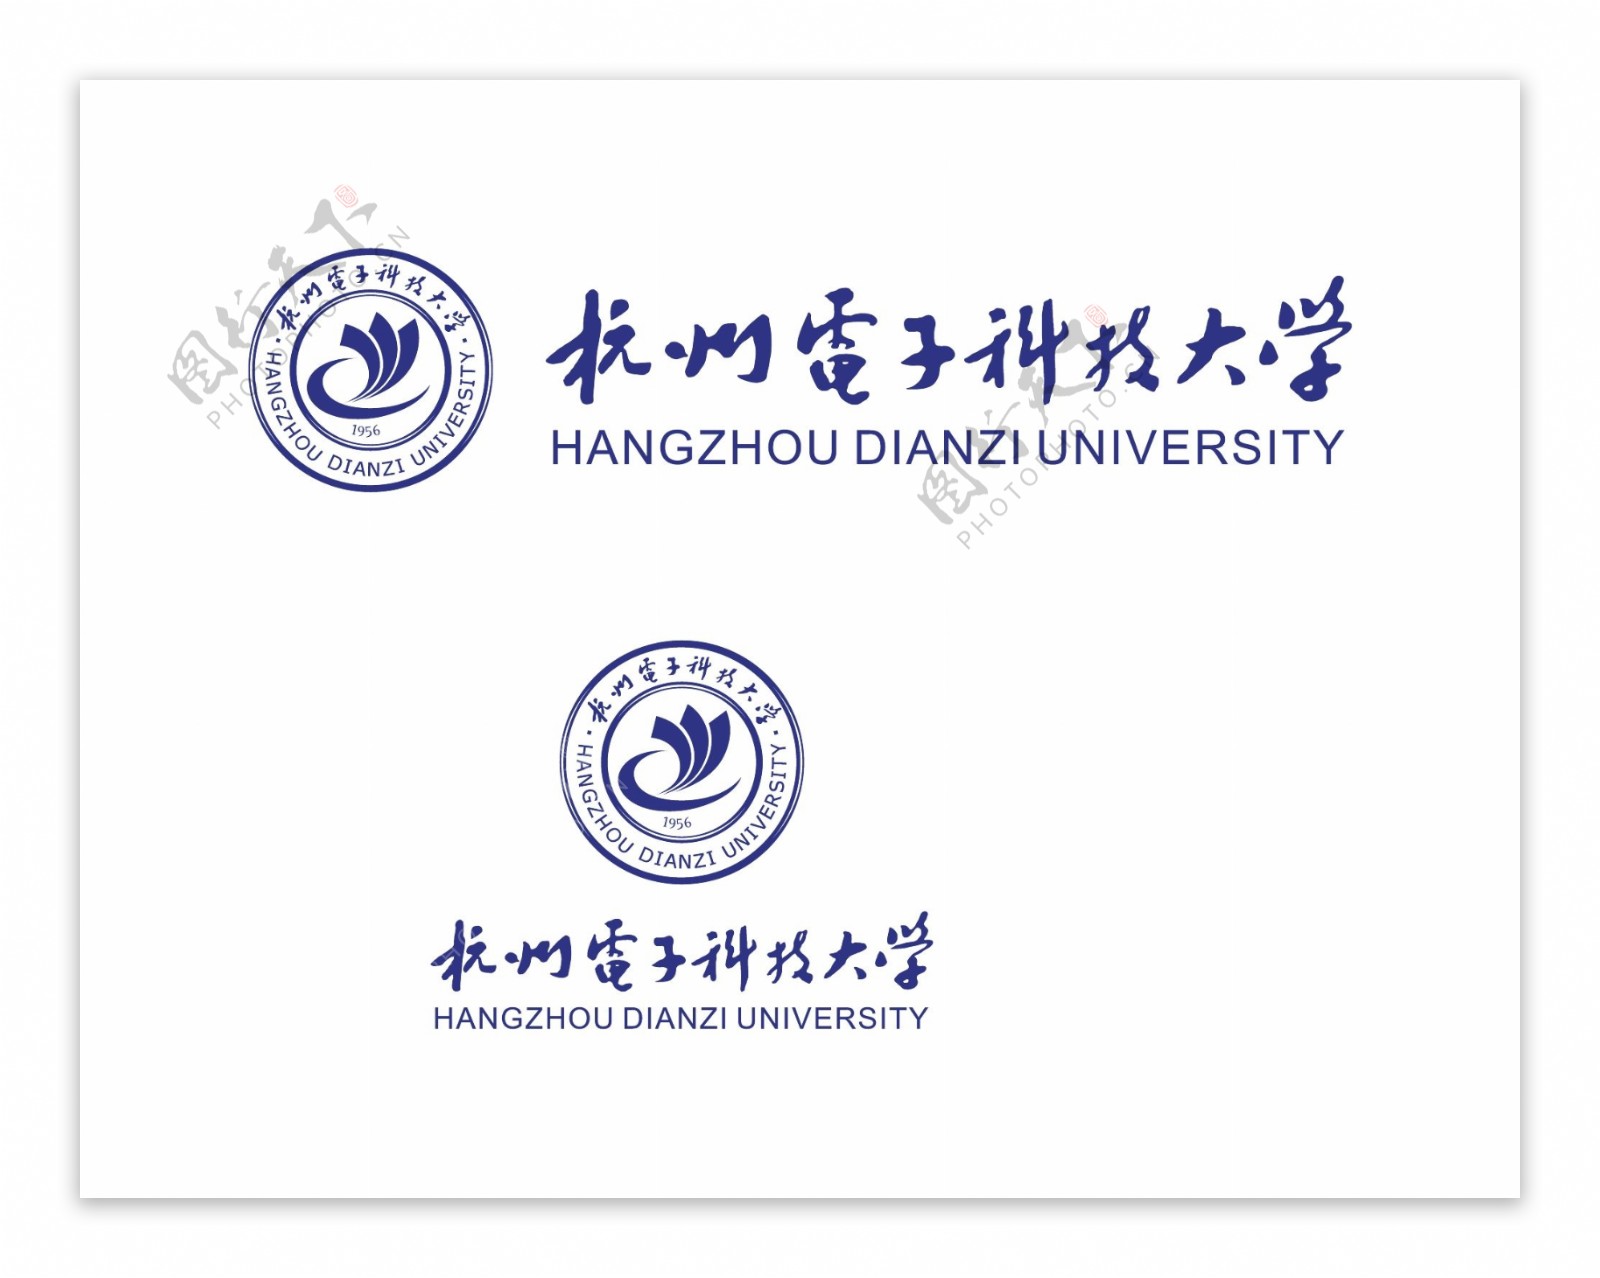 杭州电子科技大学校徽新版